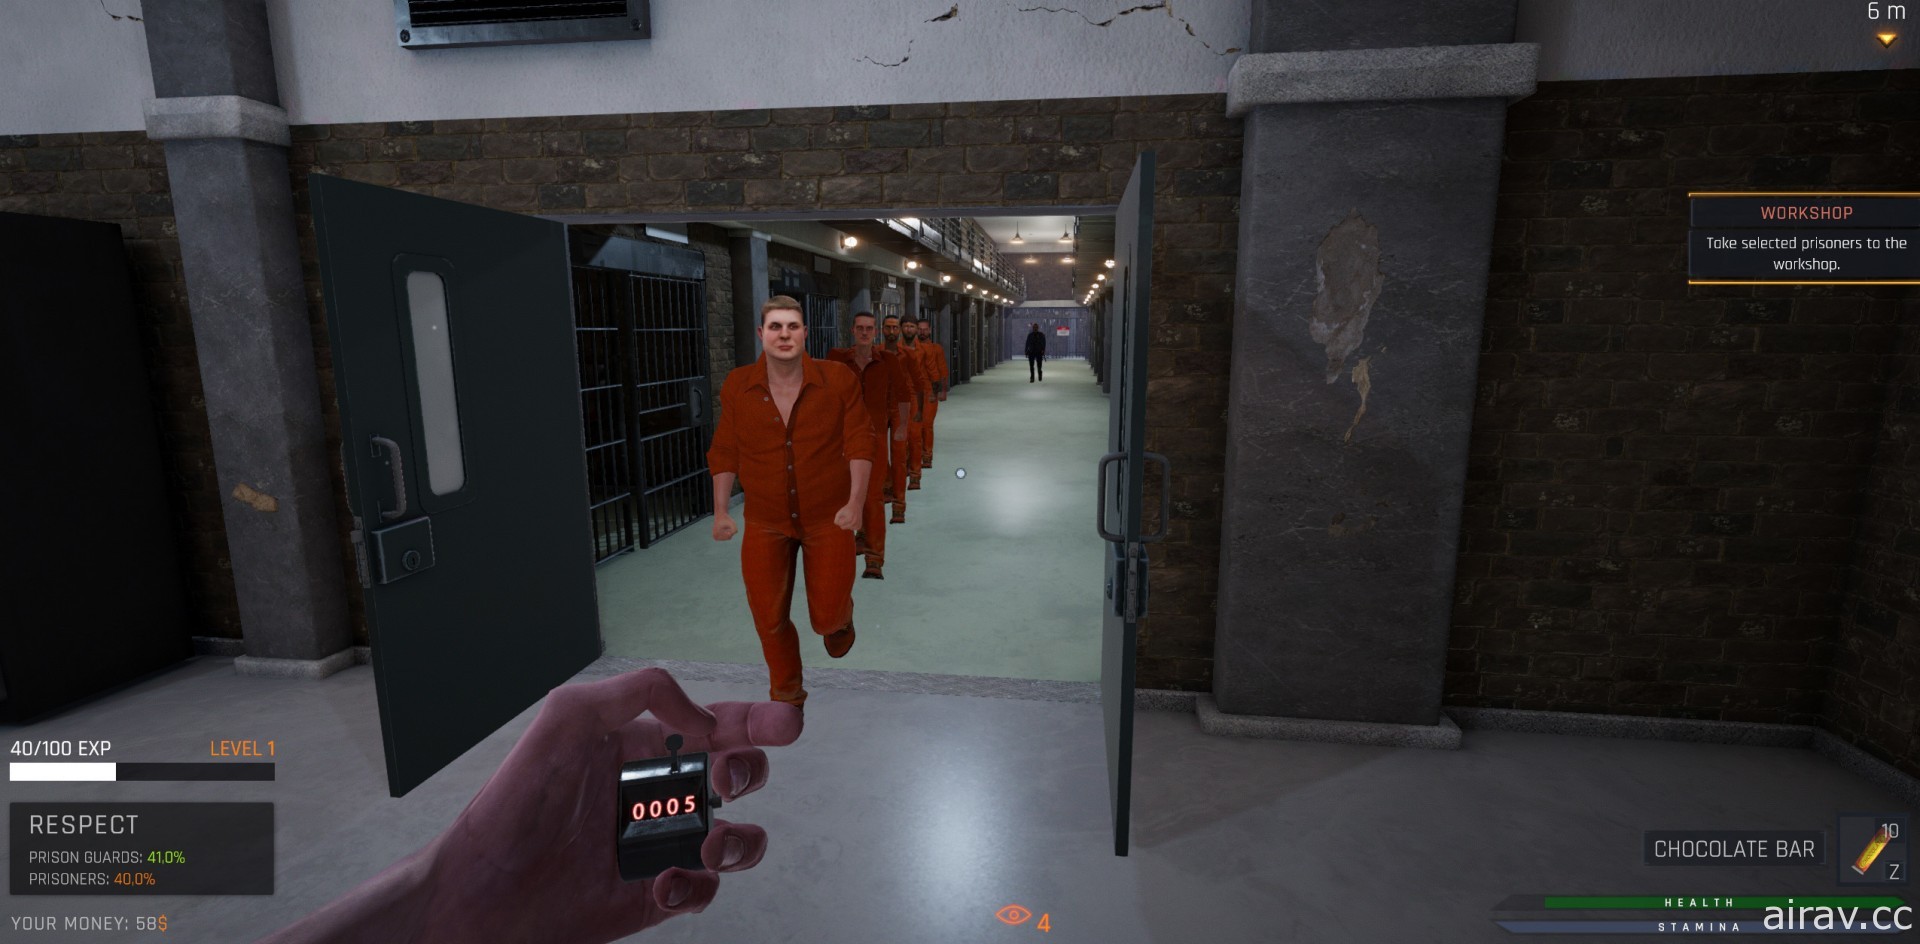 扮演狱警维持秩序！模拟新作《模拟监狱》登陆 Steam 平台